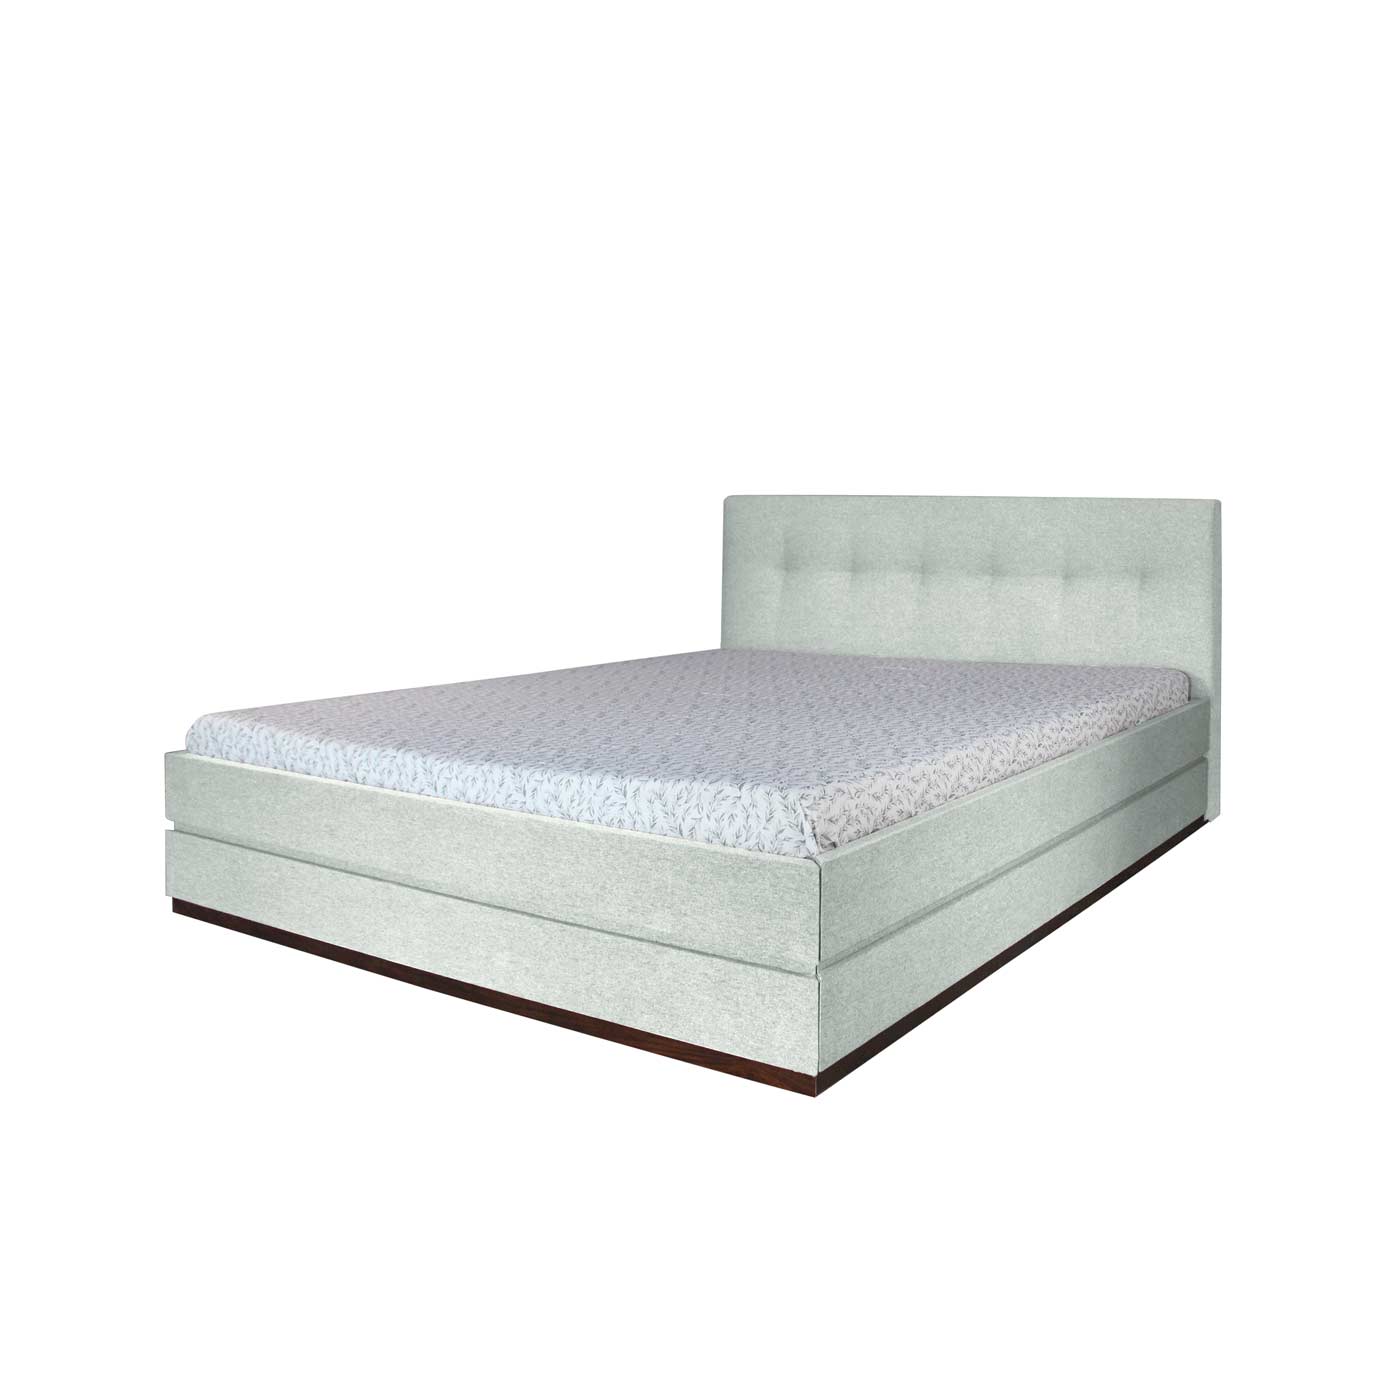 Merano Single Bed